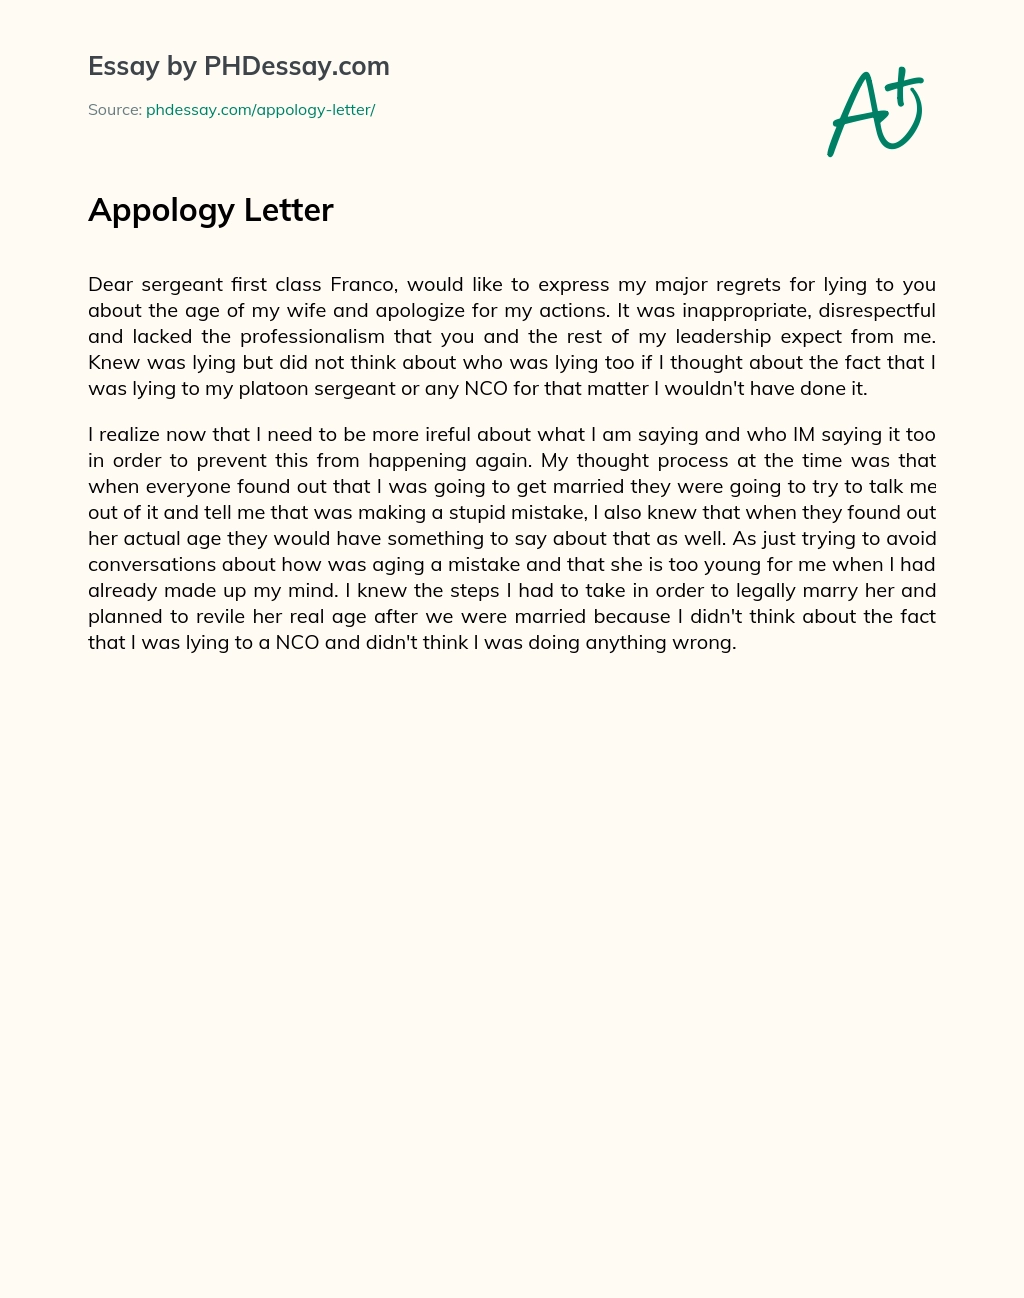 Appology Letter essay